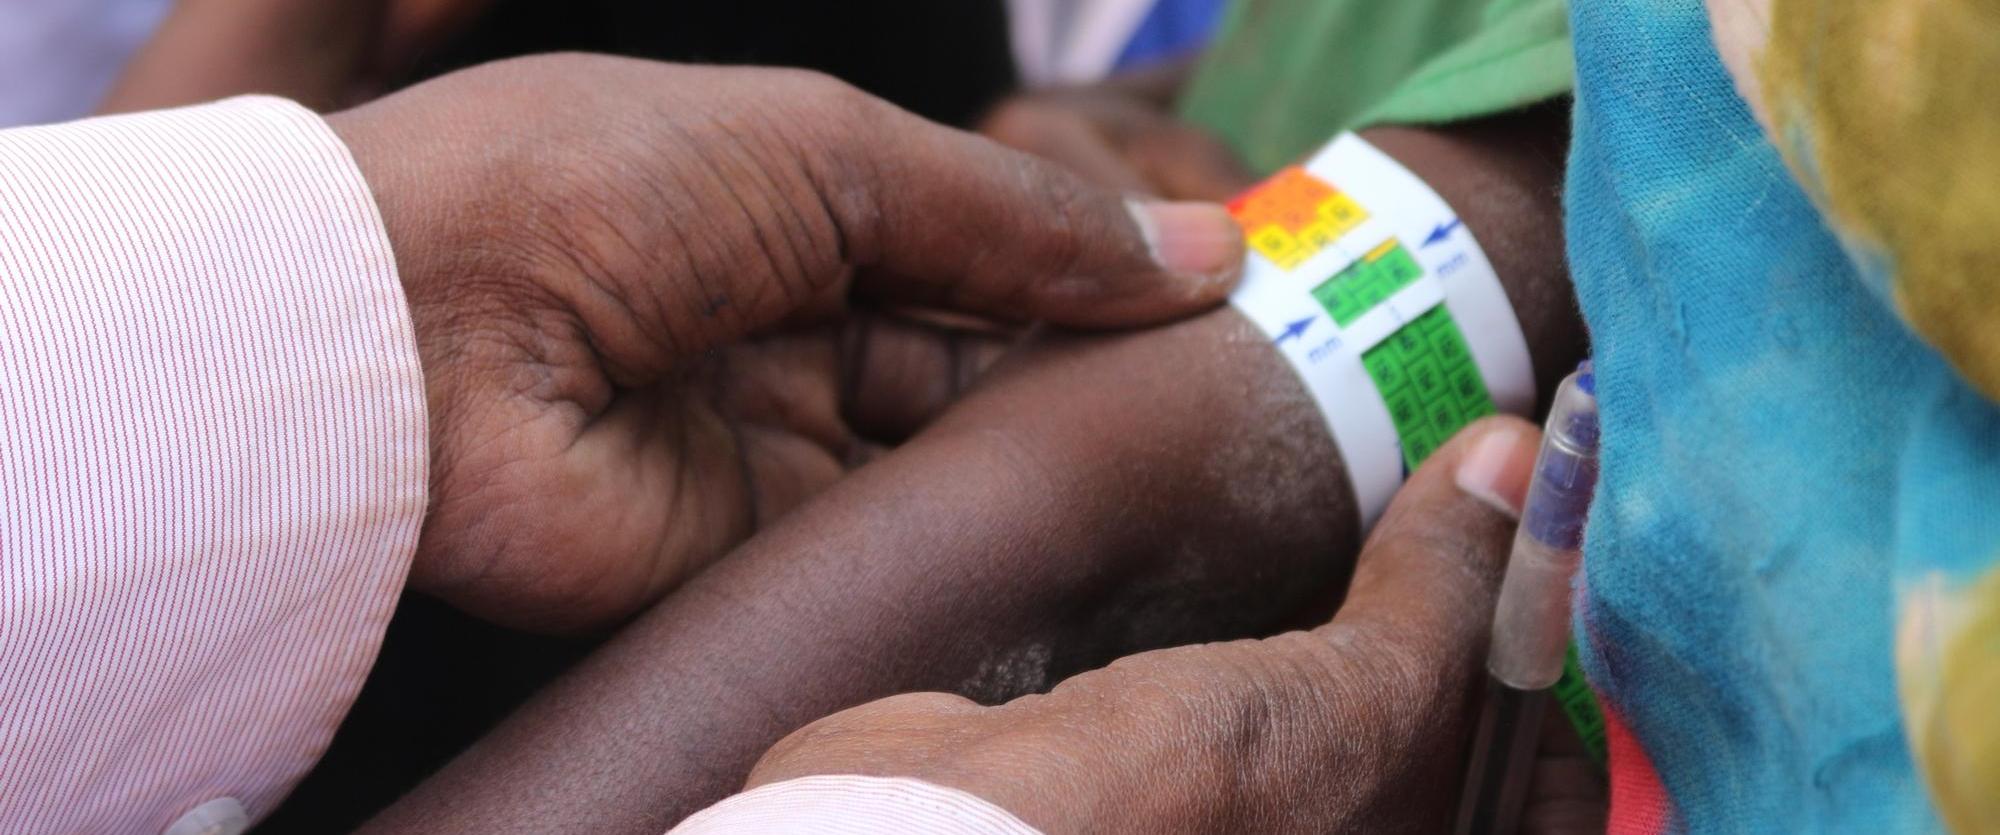 Un médecin mesure le poignet d'un enfant pour le dépistage de la malnutrition, à Asbuli, en Éthiopie. Février 2016. 